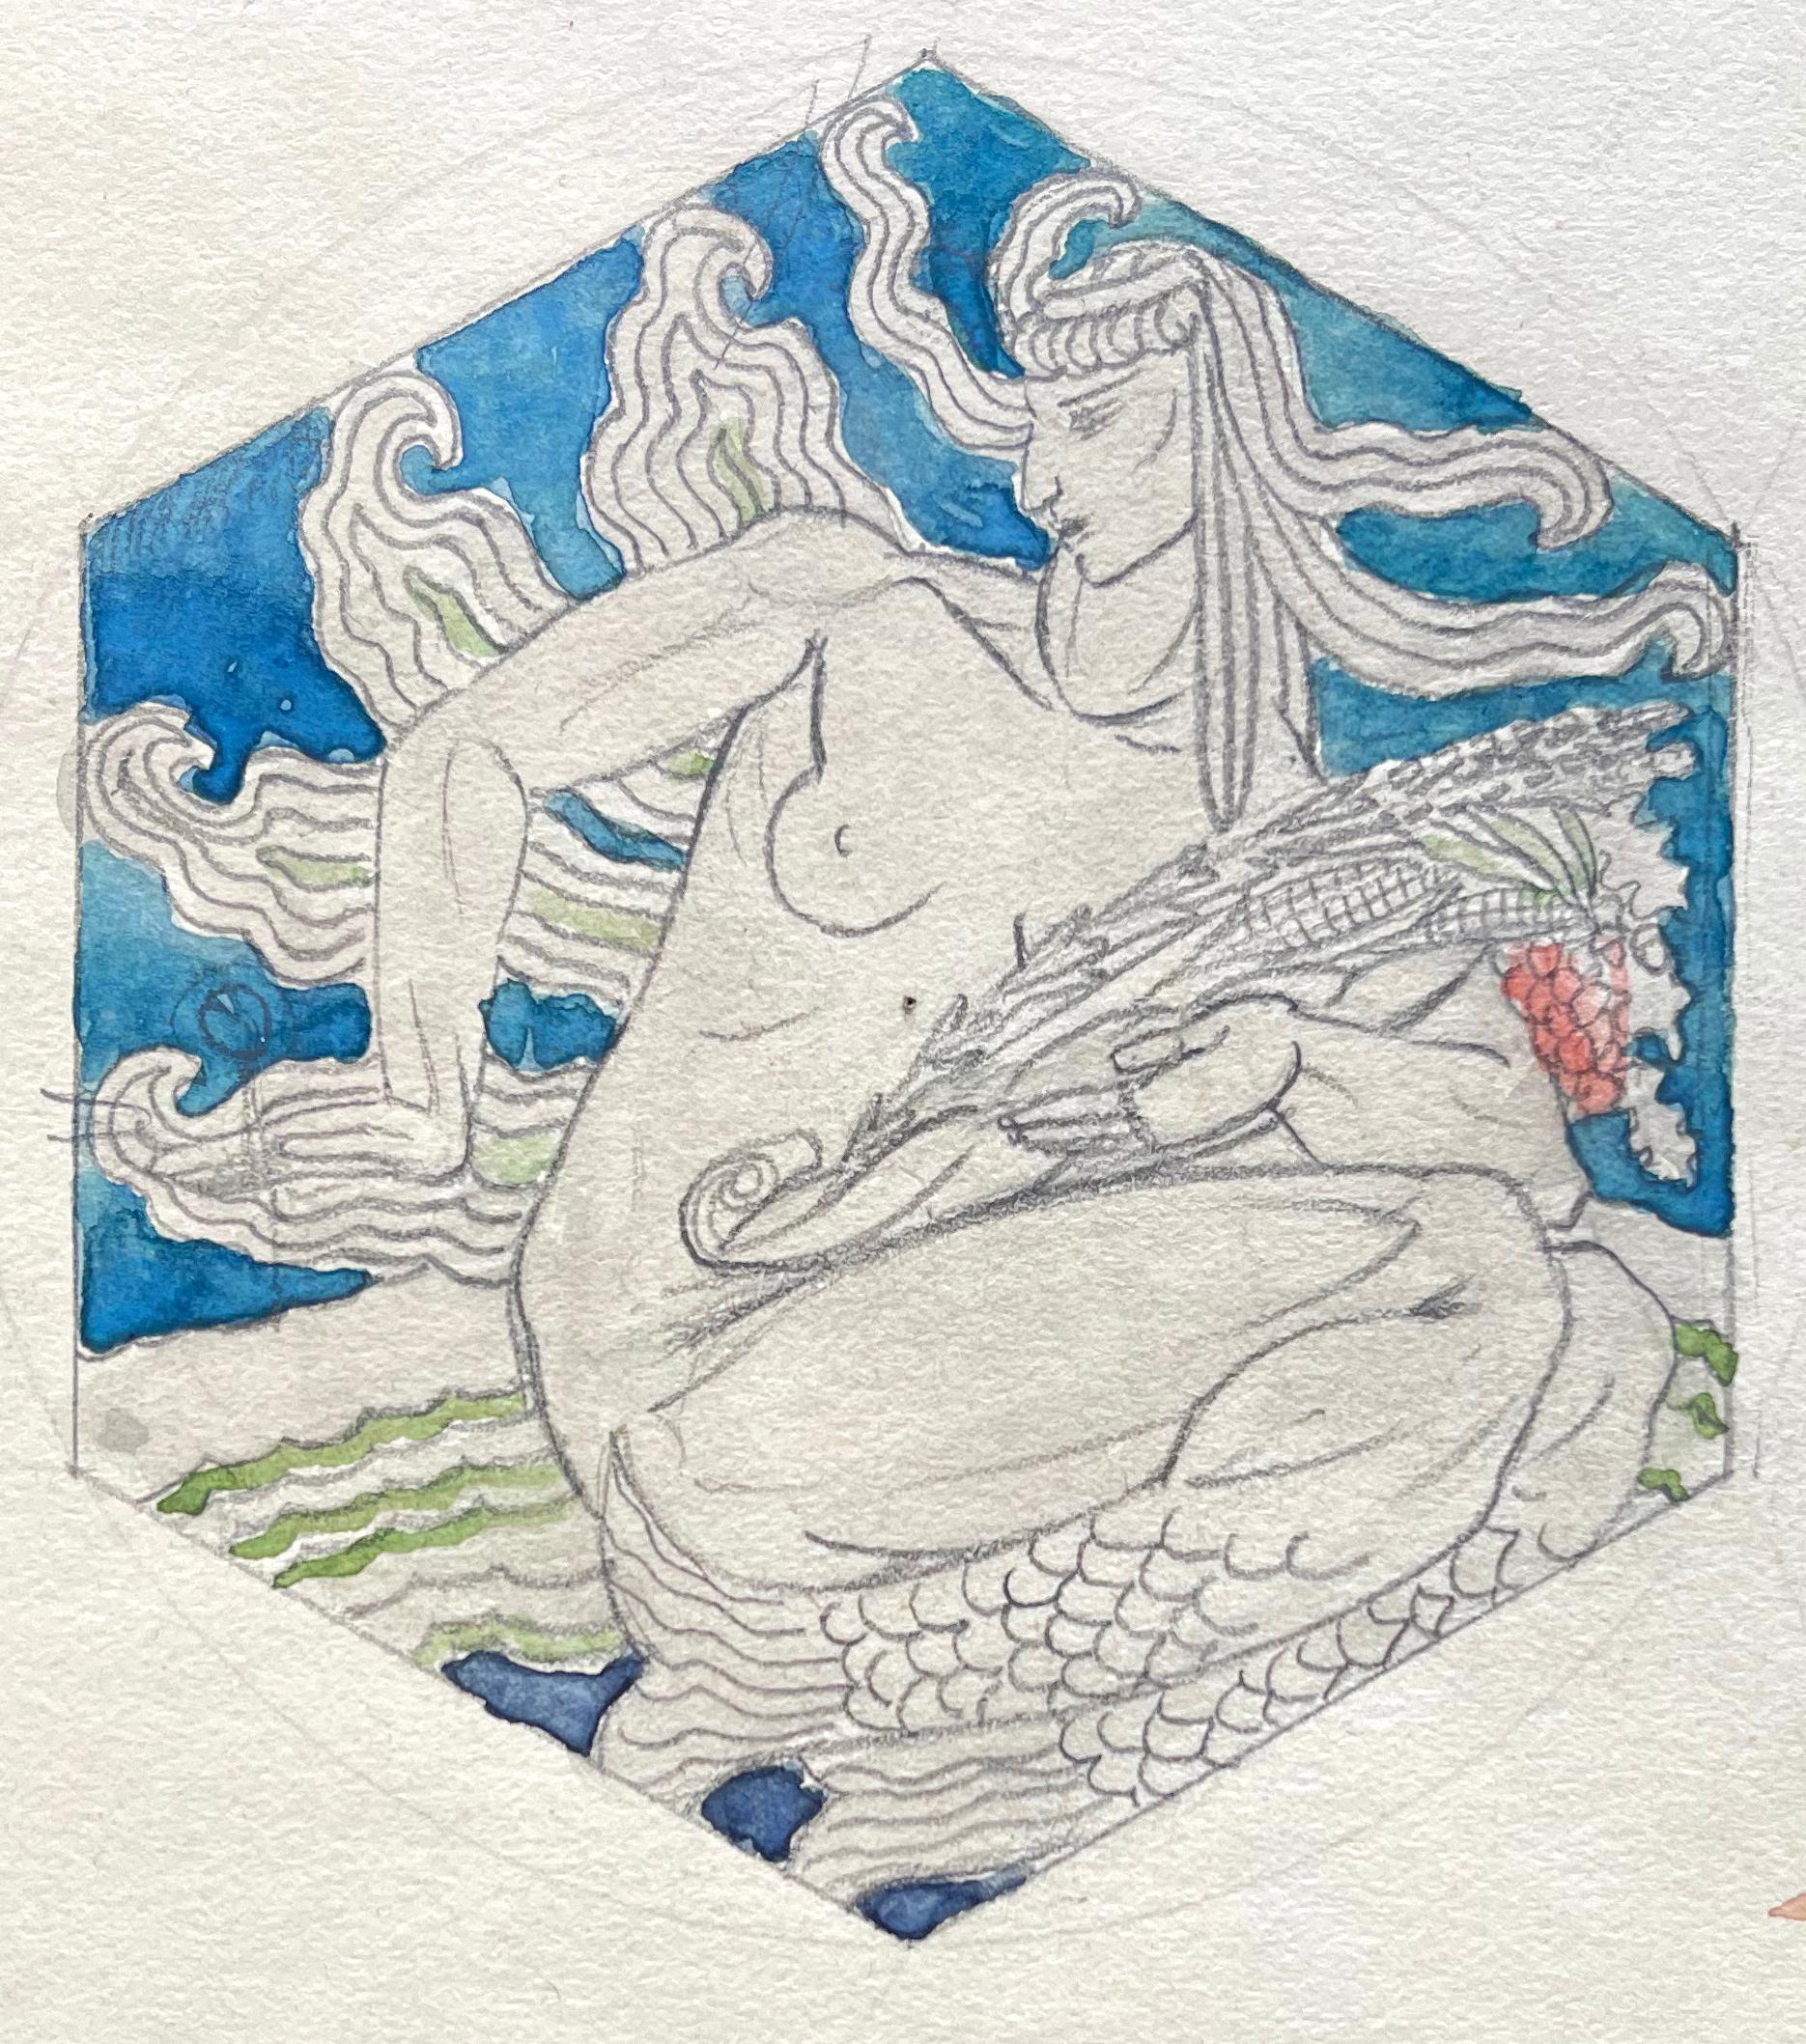 Exemples classiques et magnifiques de la peinture allégorique Art déco, cette paire d'études murales représente des sirènes nues, chacune tenant les symboles des fruits de la terre et de la mer. L'un tient des épis de maïs et d'autres produits de la